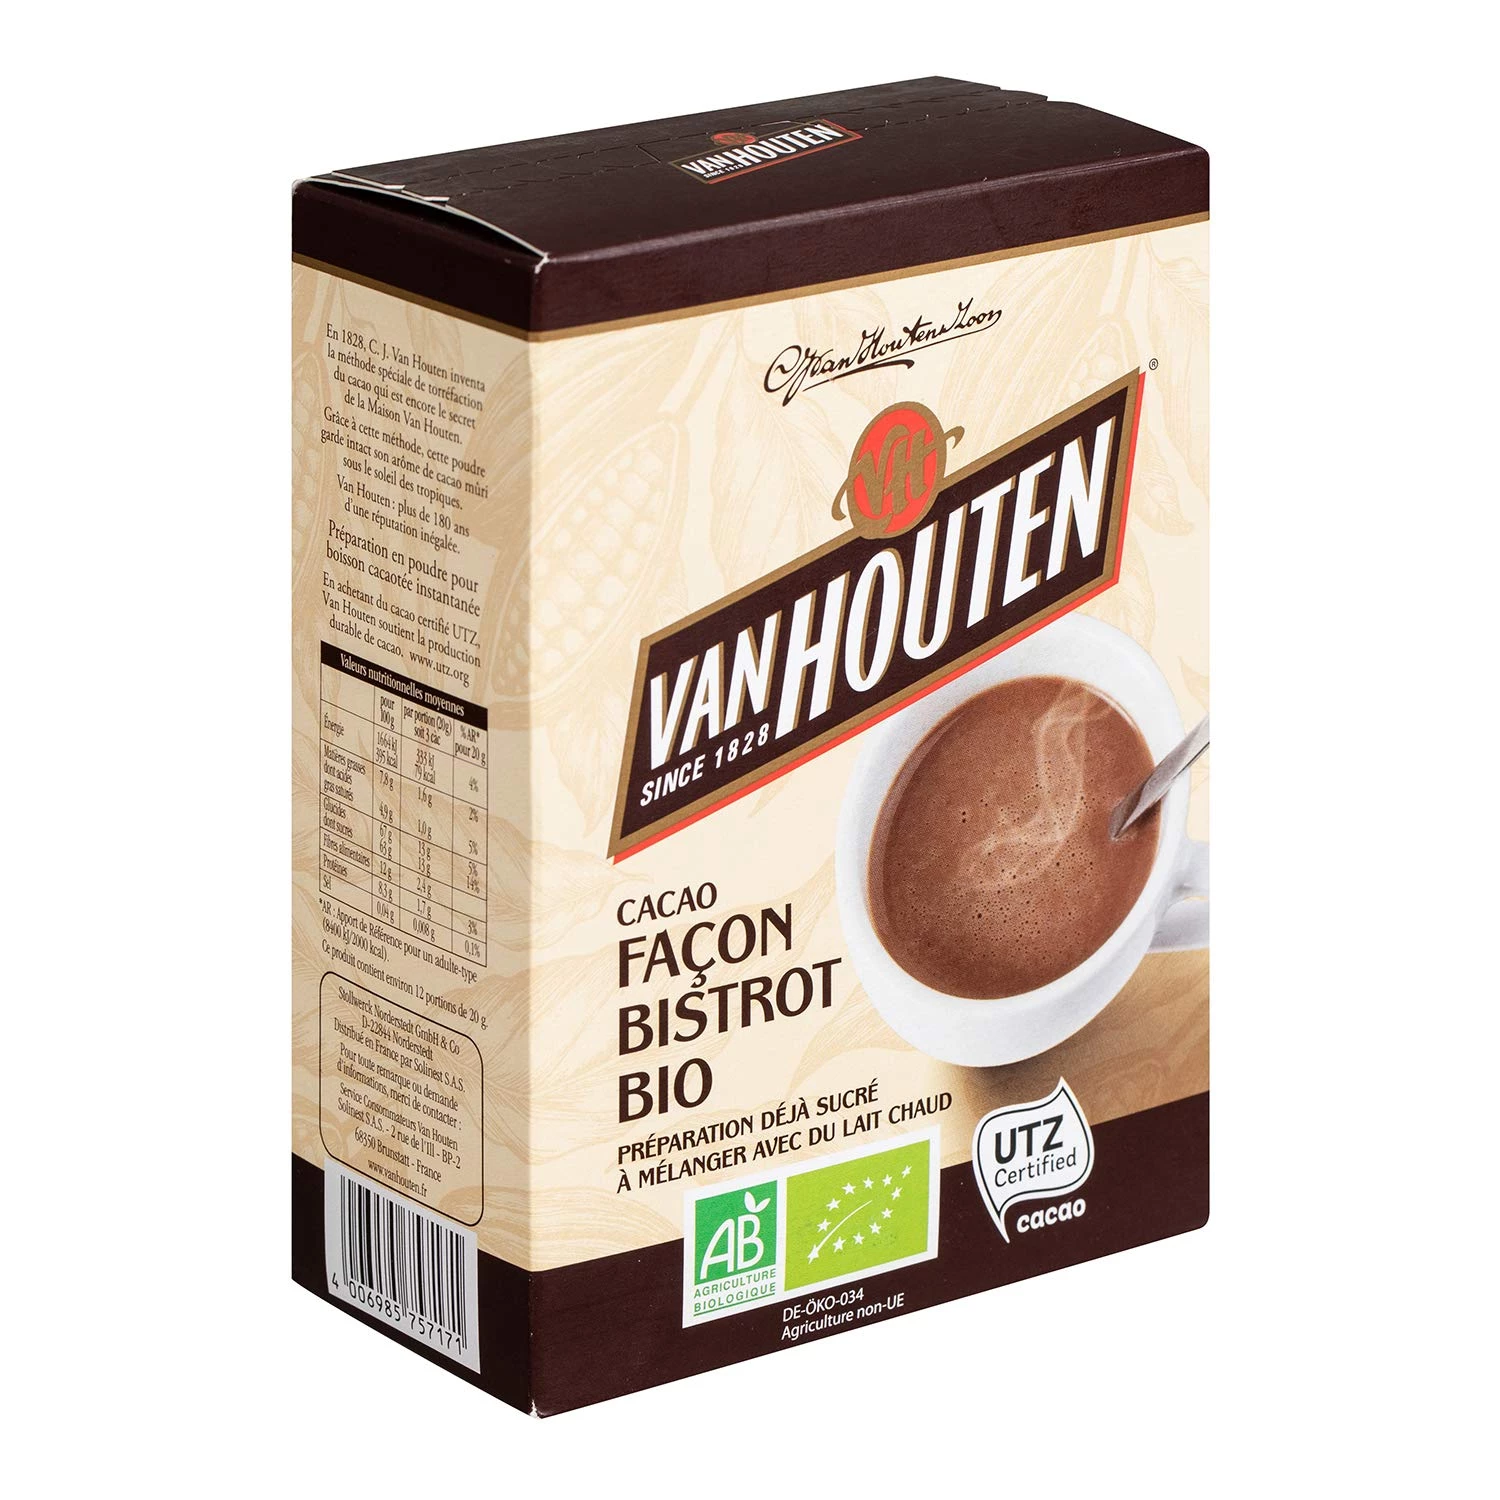 Cacao Façon Bistrot Bio 250g - VAN HOUTEN